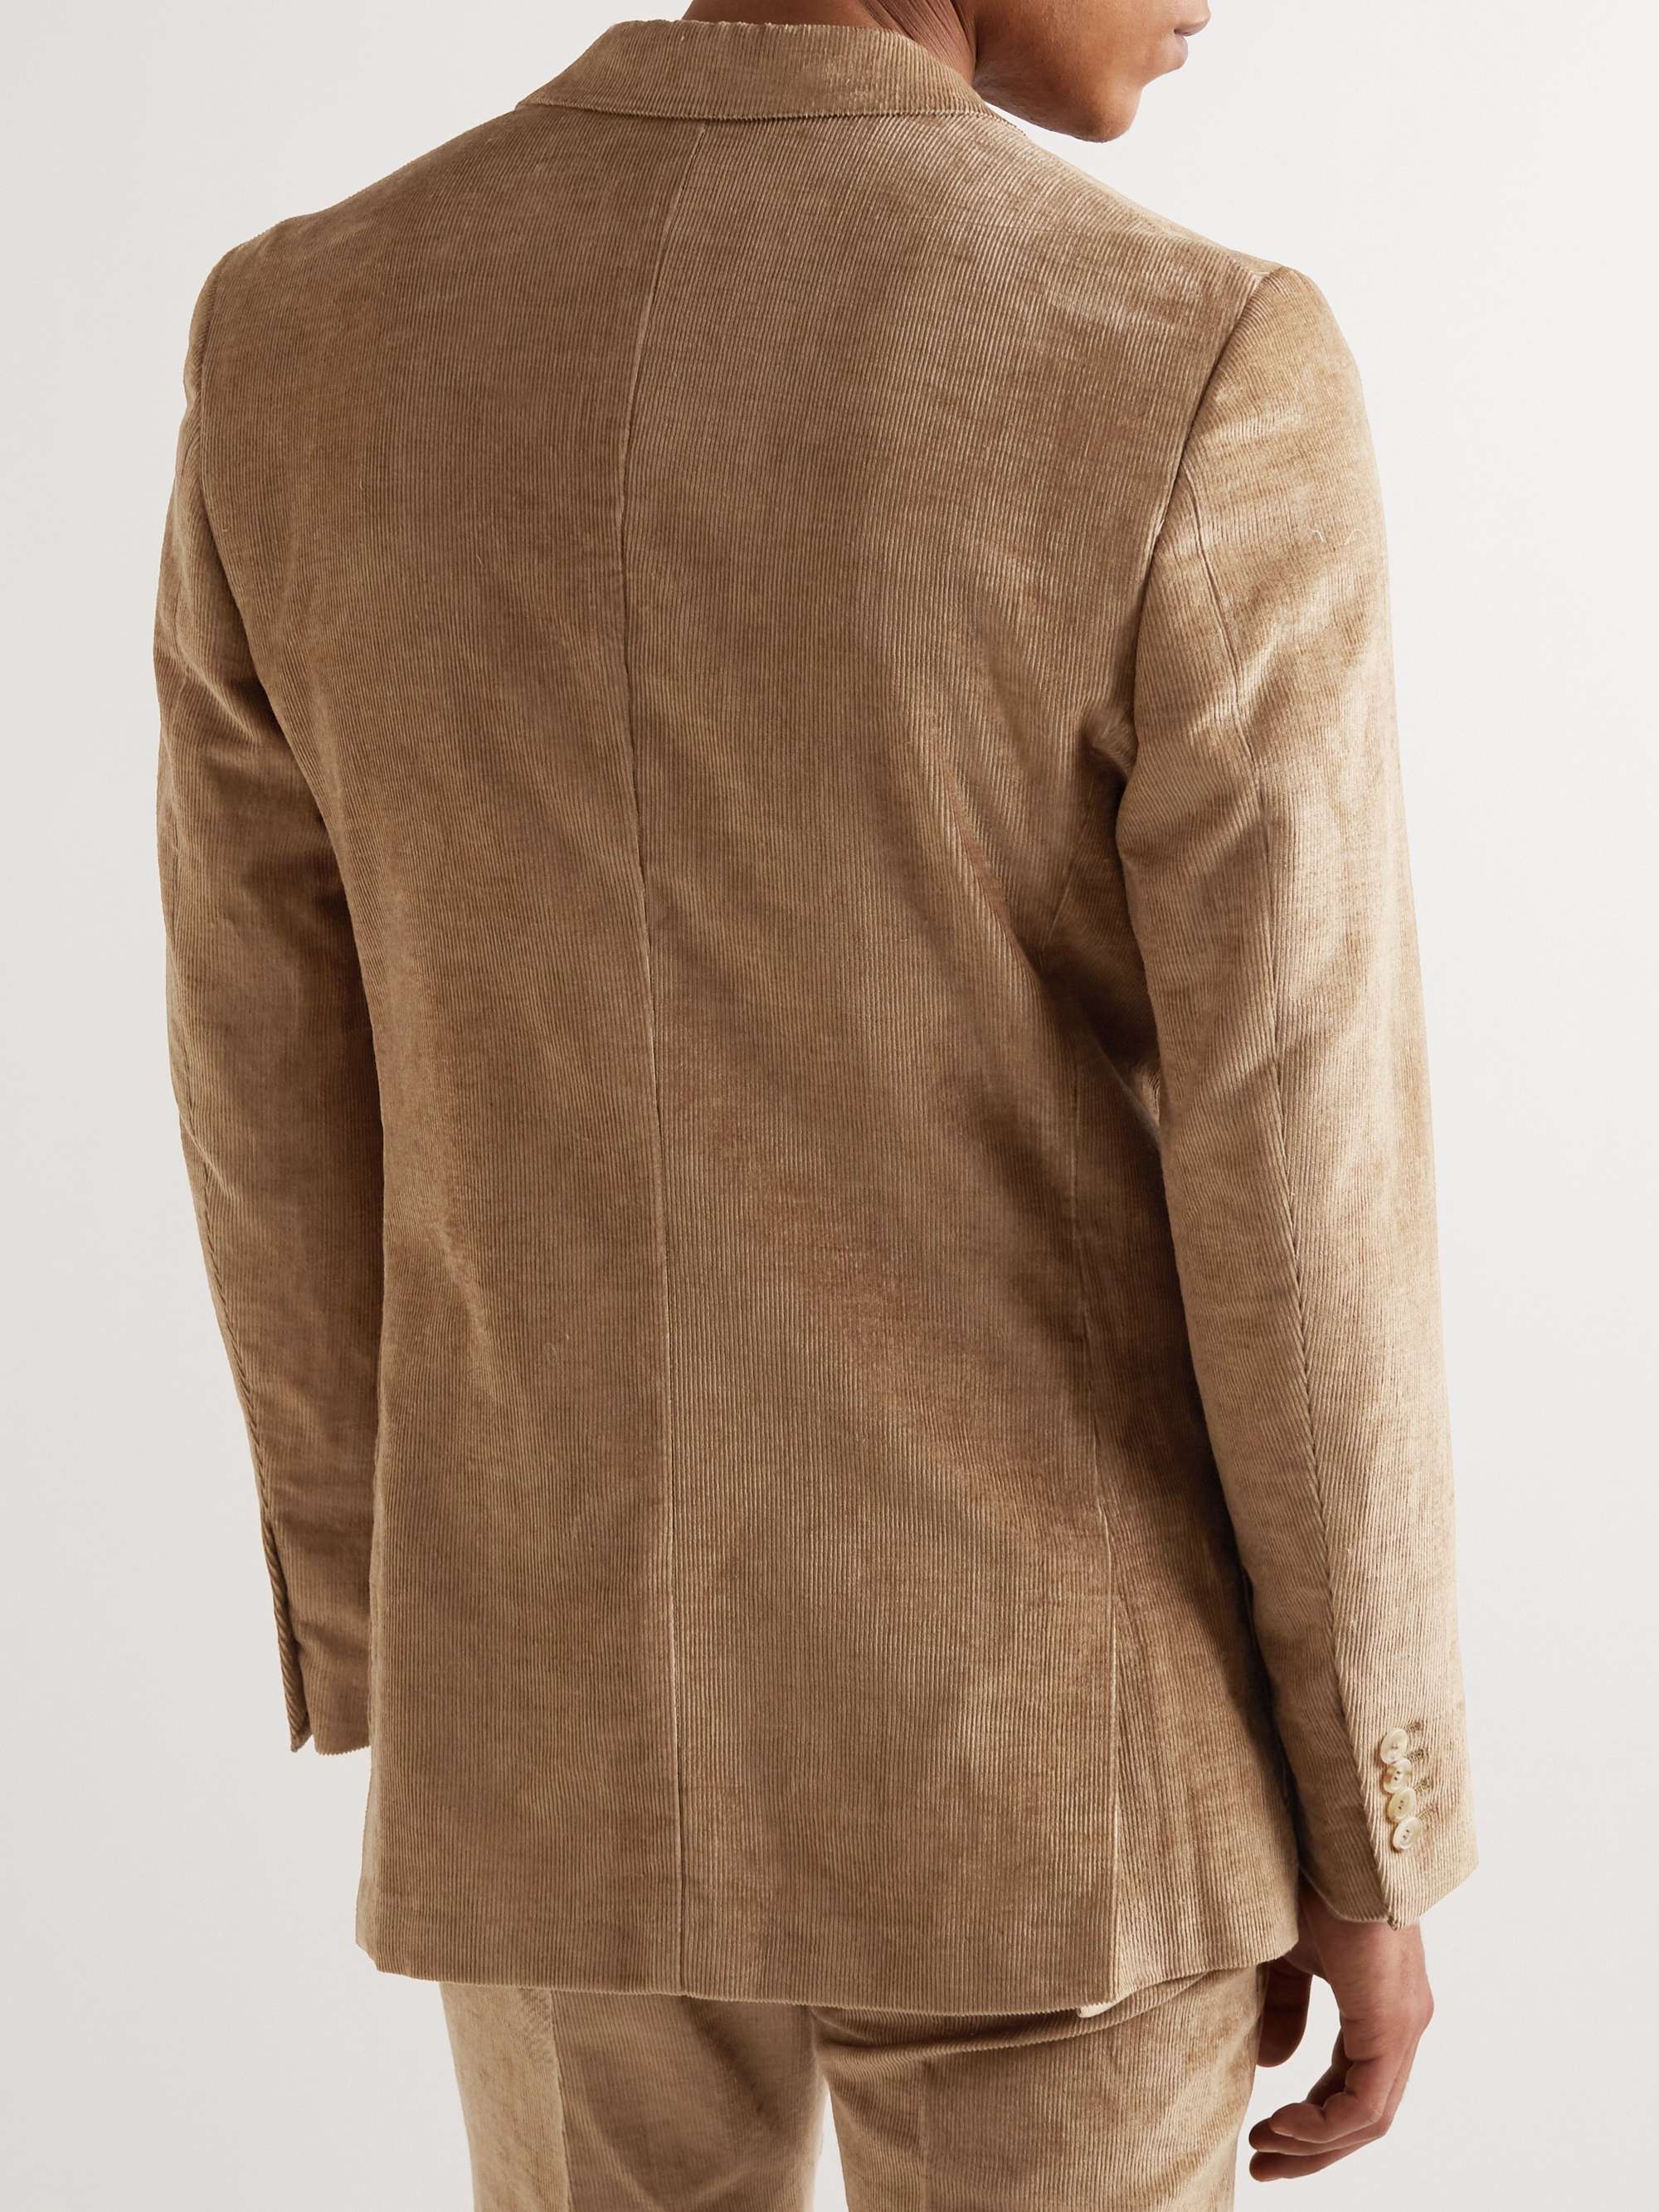 GABRIELA HEARST Paz Linen and Cotton-Blend Corduroy Suit Jacket